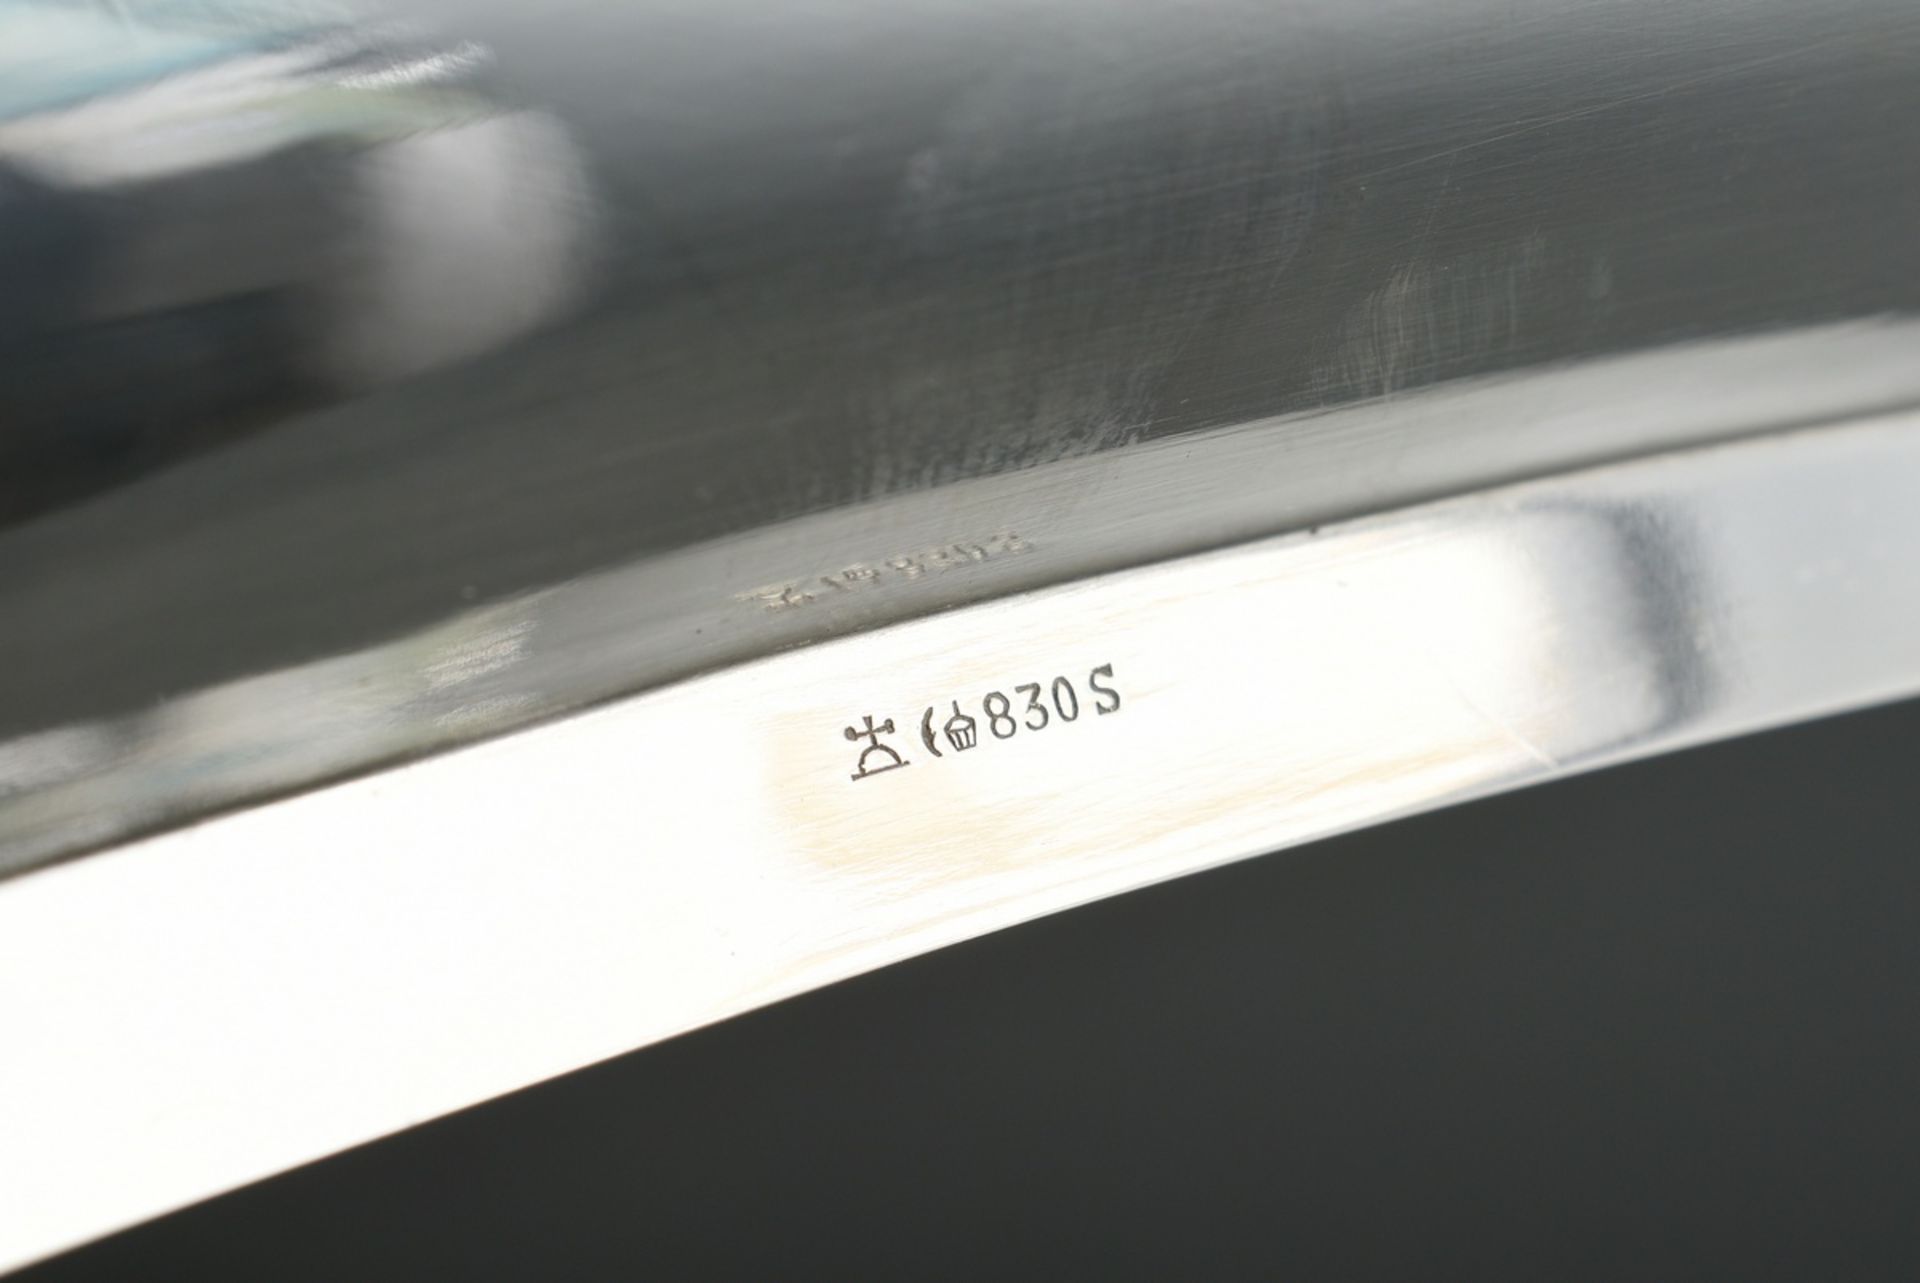 Schlichte Midcentury Schale in Vierpassform, Silber 830, 406g, 29x20cm, min. berieben - Bild 3 aus 4